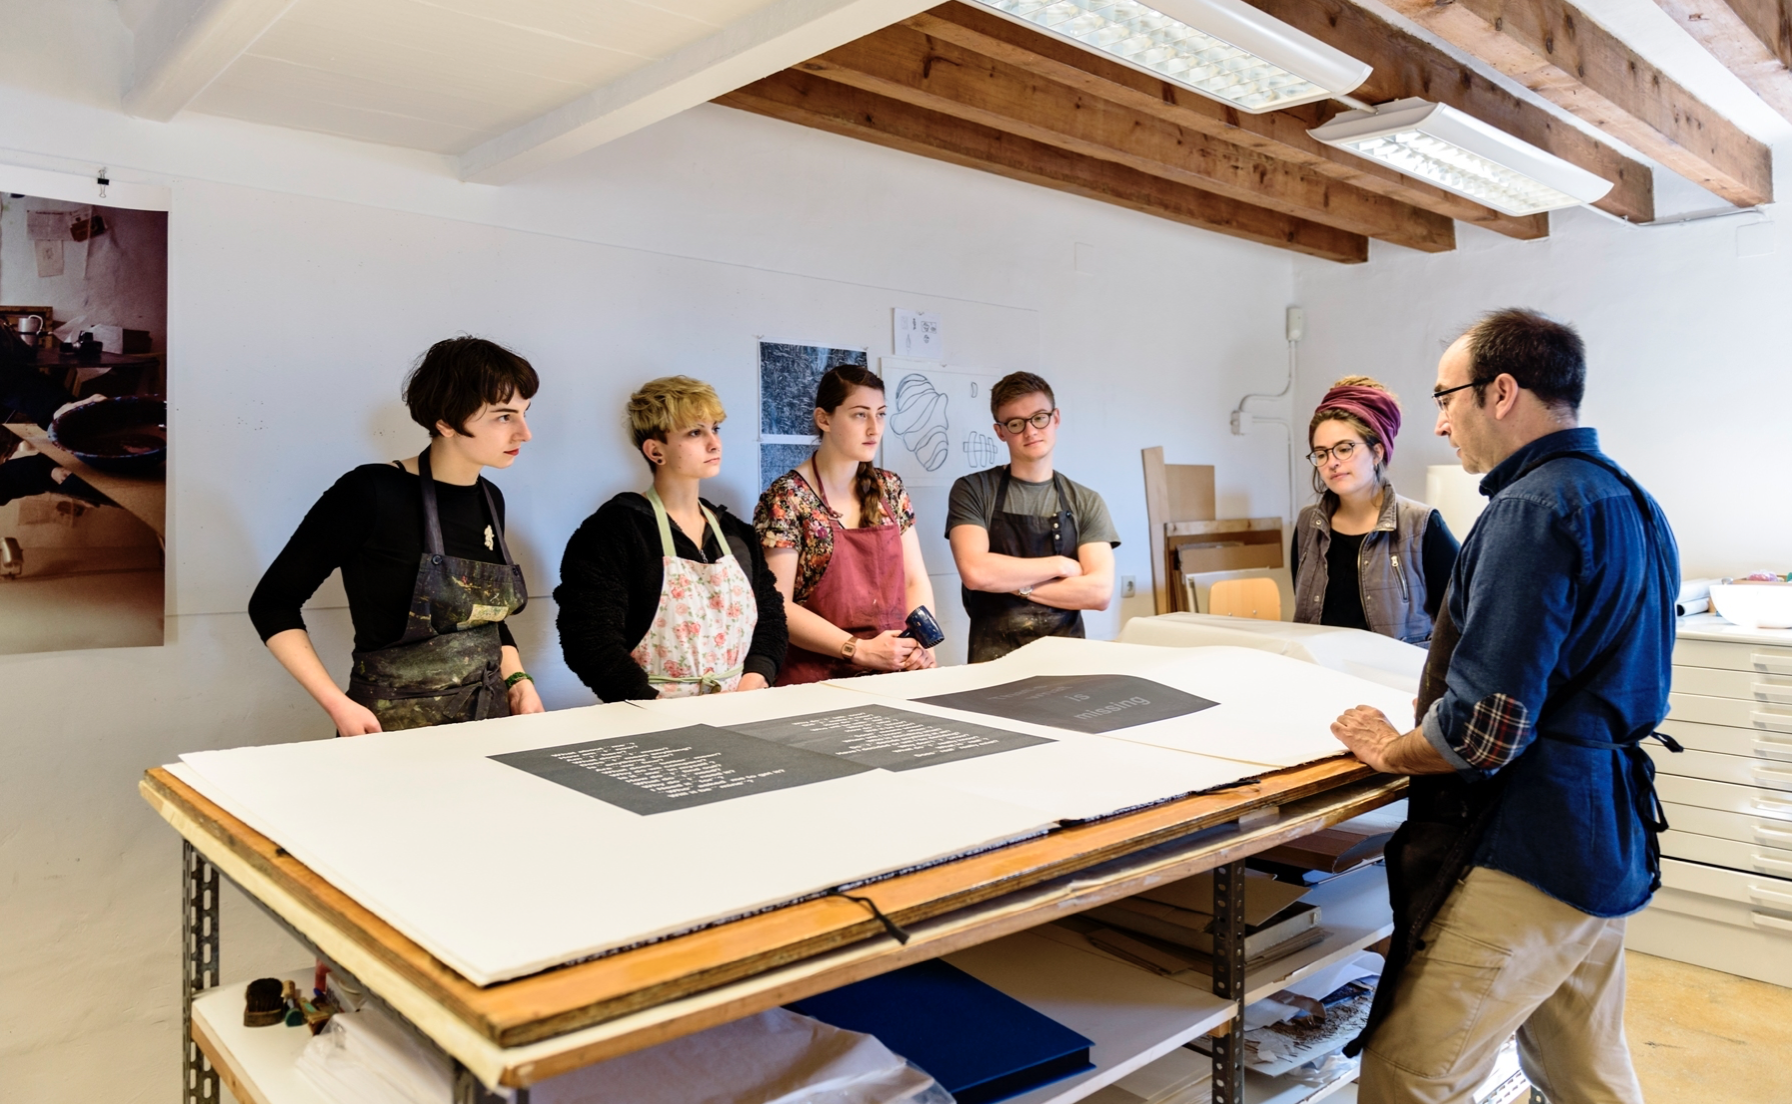 La Fundació Miró Mallorca ofereix gratuïtament els tallers gràfics als artistes balears